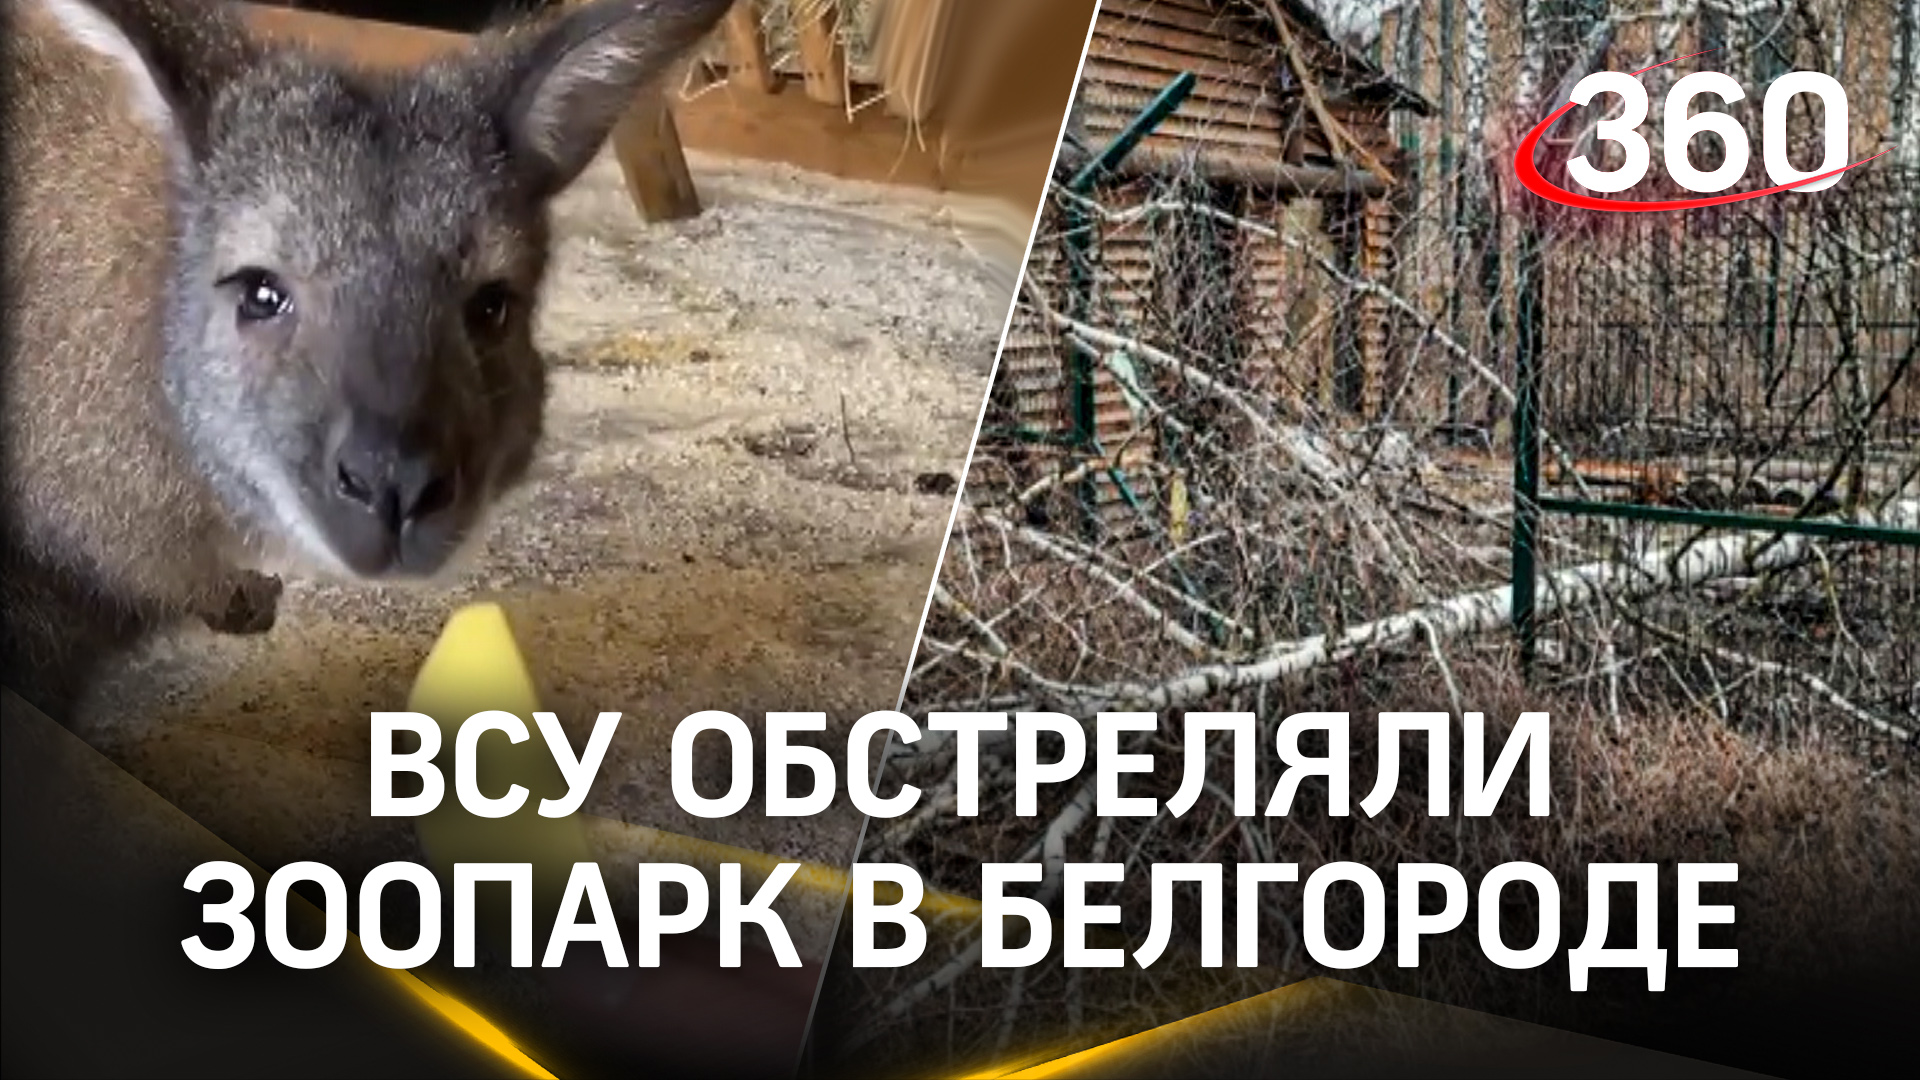 Ручная кенгуру погибла при обстреле ВСУ в Белгороде - Гранди была беременна